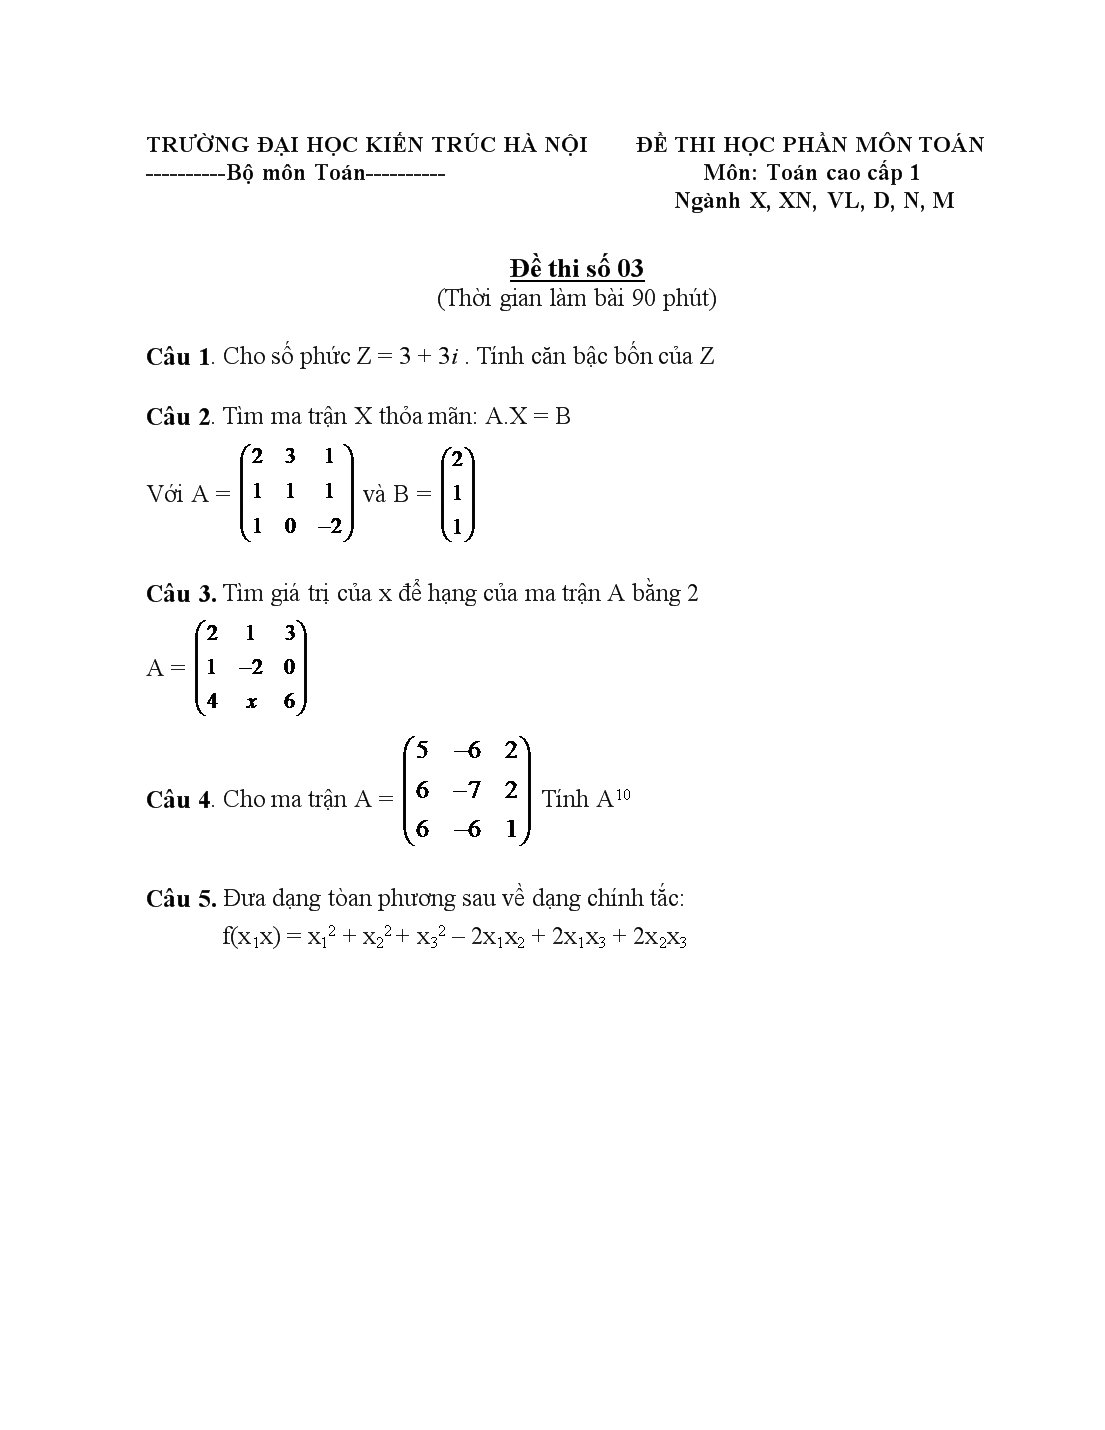 Đề thi học phần môn toán cao cấp 1 trang 3